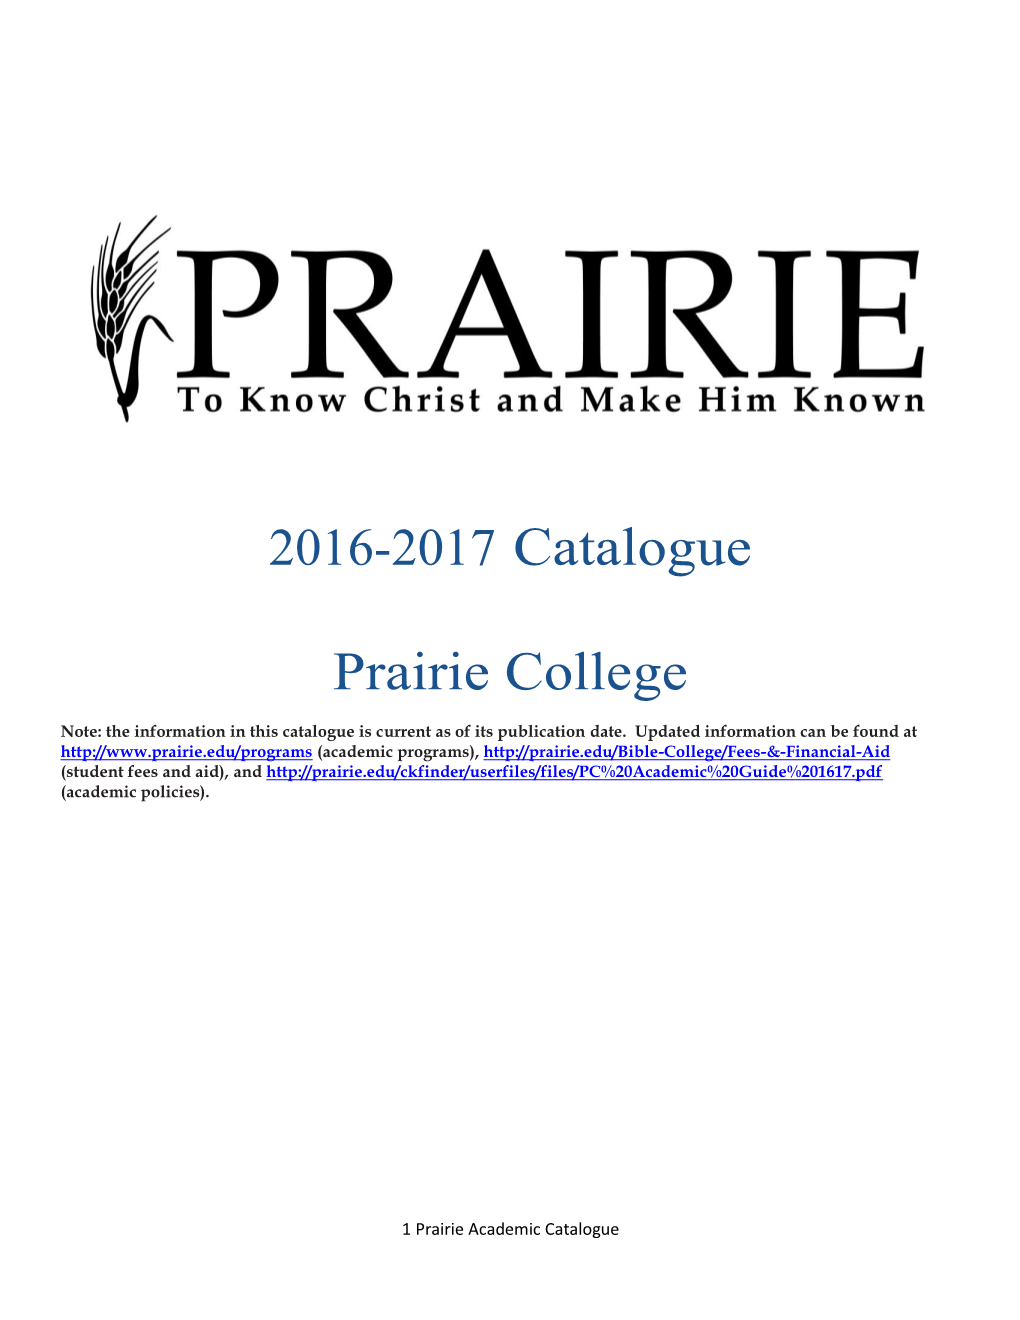 2016-2017 Prairie College Catalogue